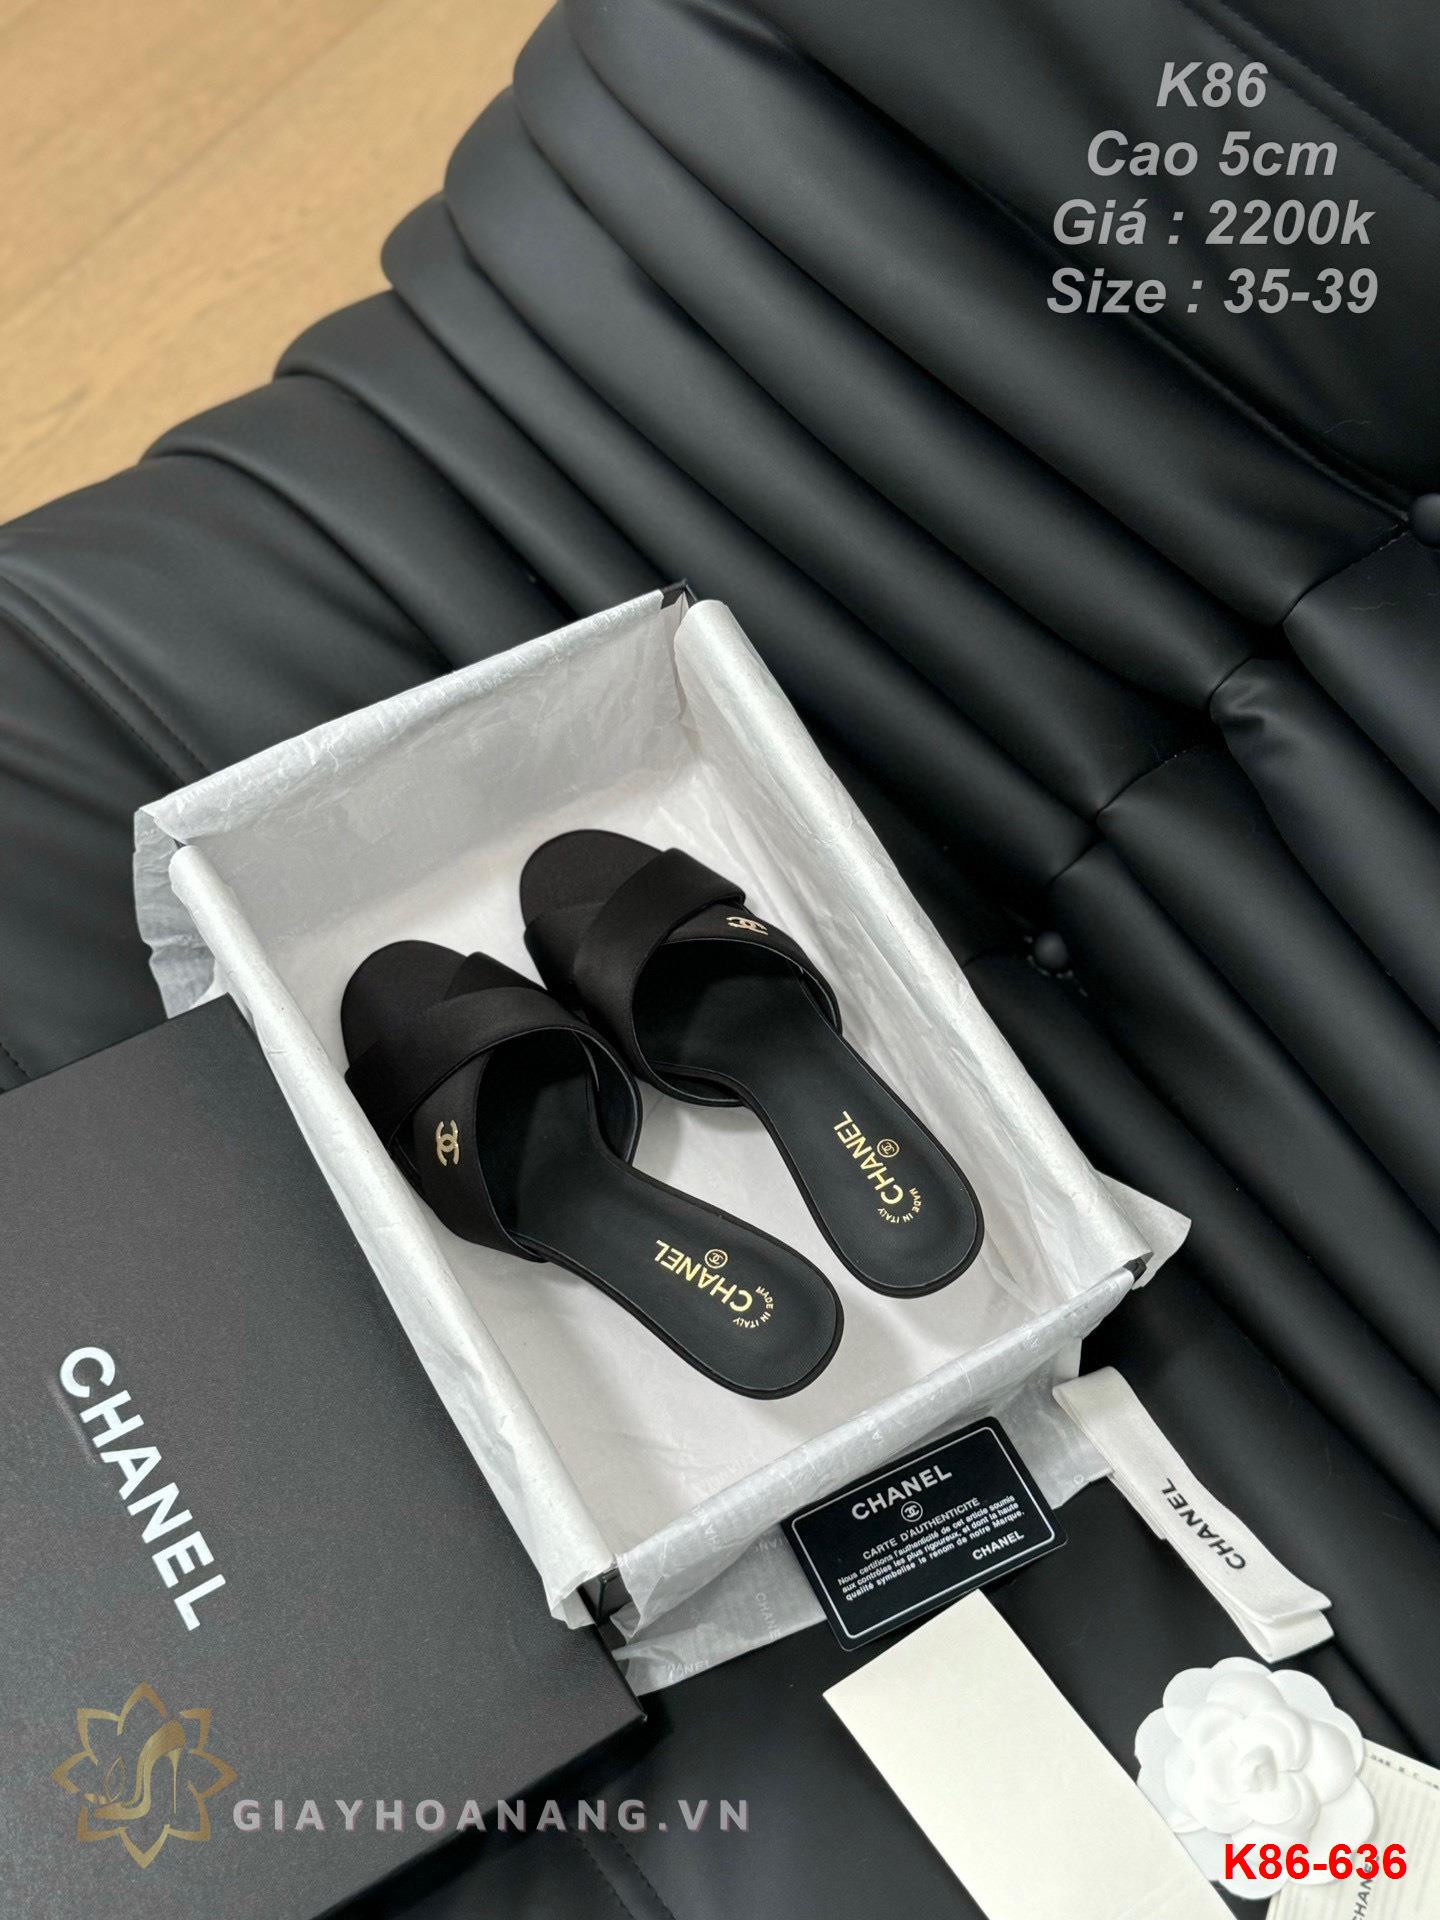 K86-636 Chanel dép cao gót 5cm siêu cấp